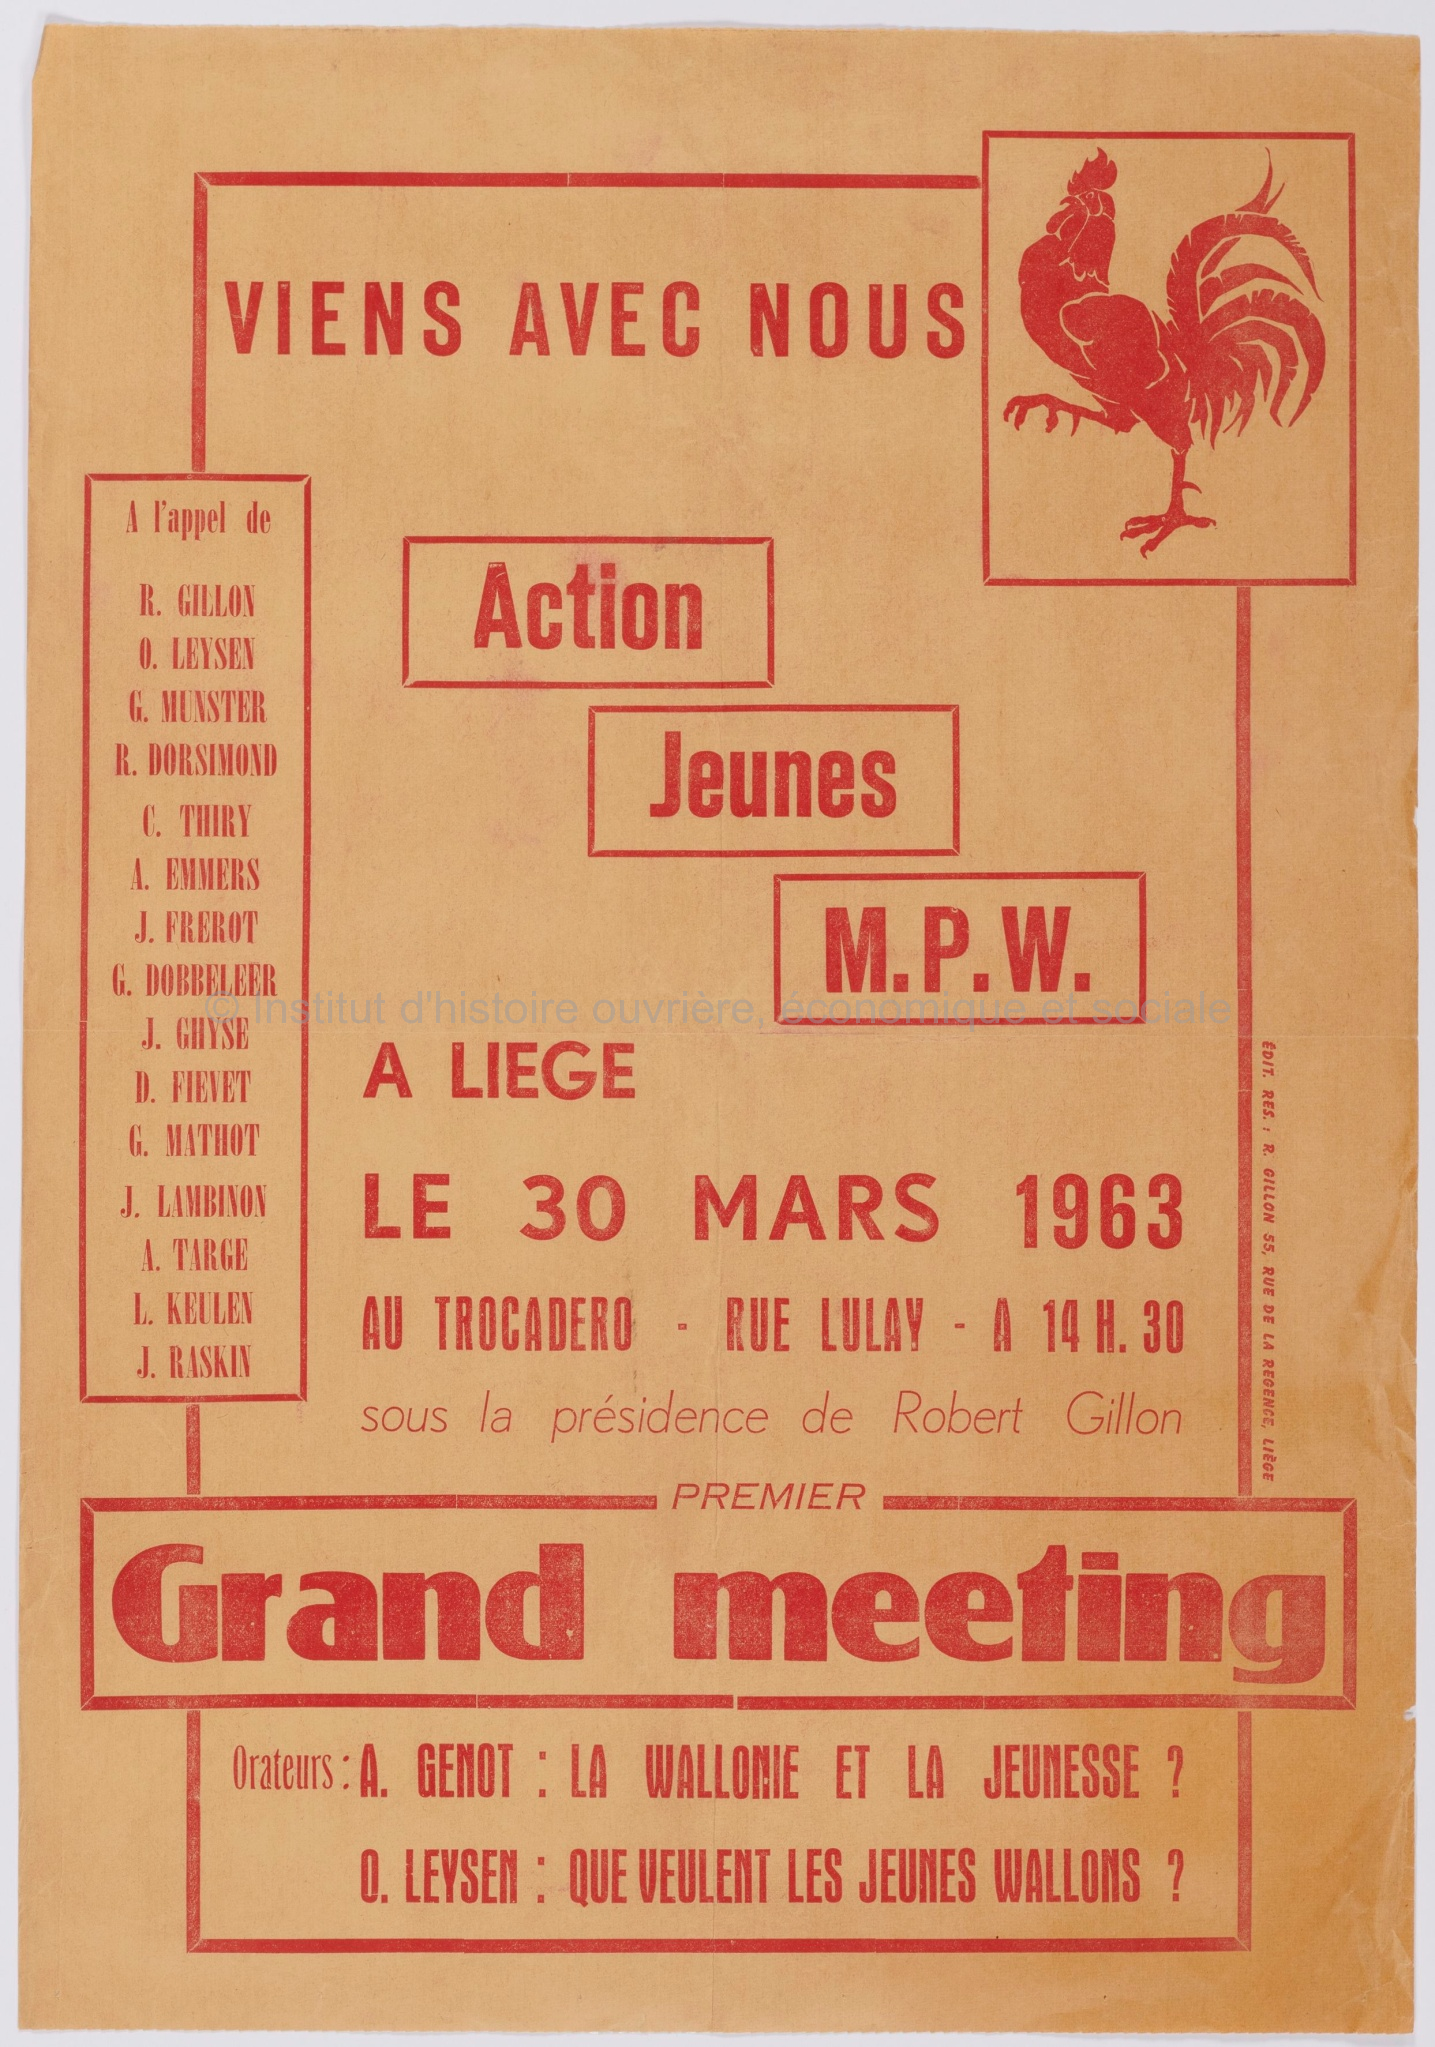 Action jeunes MPW : viens avec nous à Liège le 30 mars 1963 : premier grand meeting